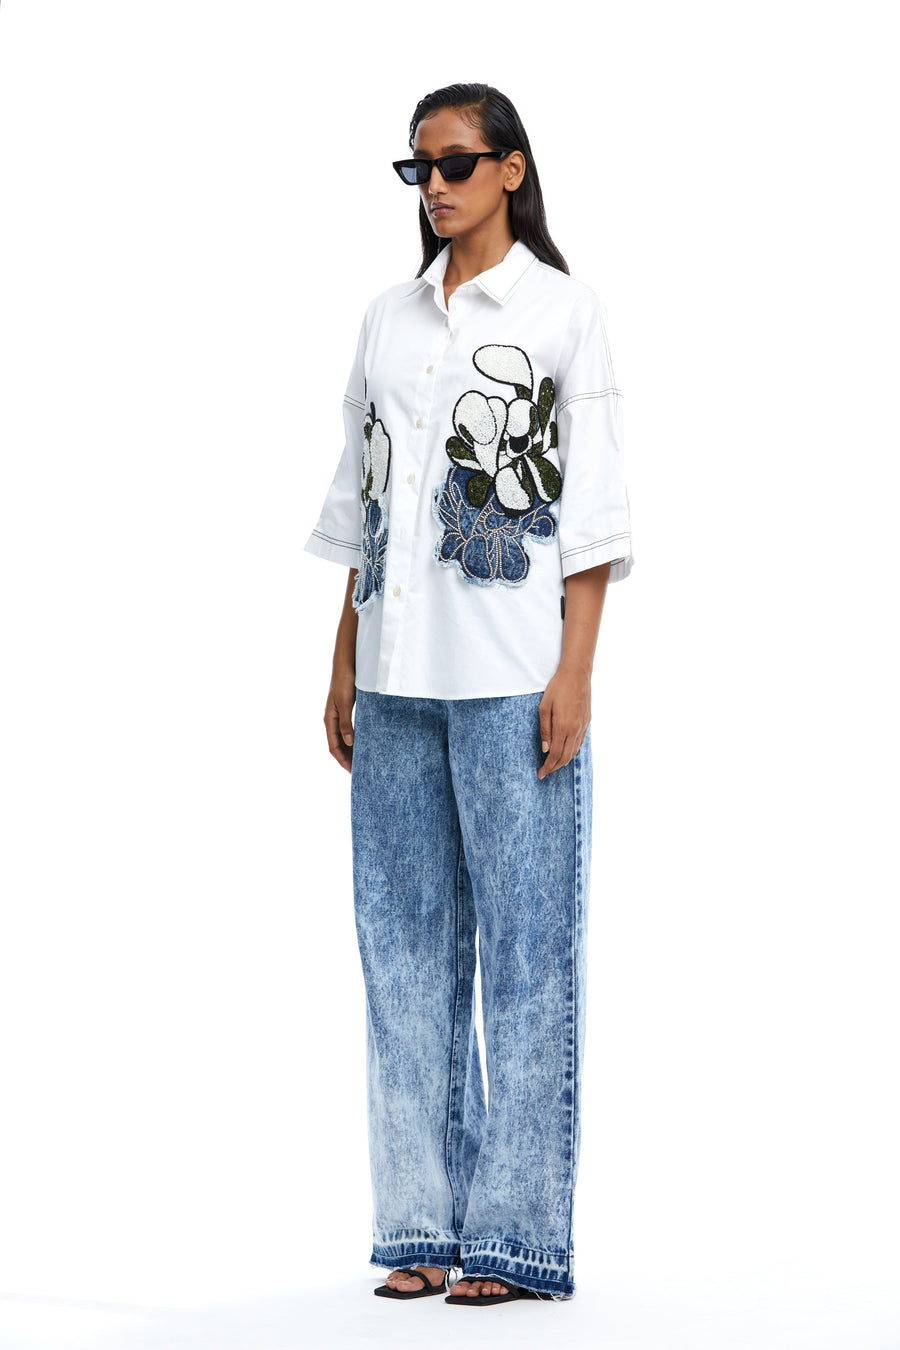 'Warped Vine' Dual Embellished Shirt - Kanika Goyal Label